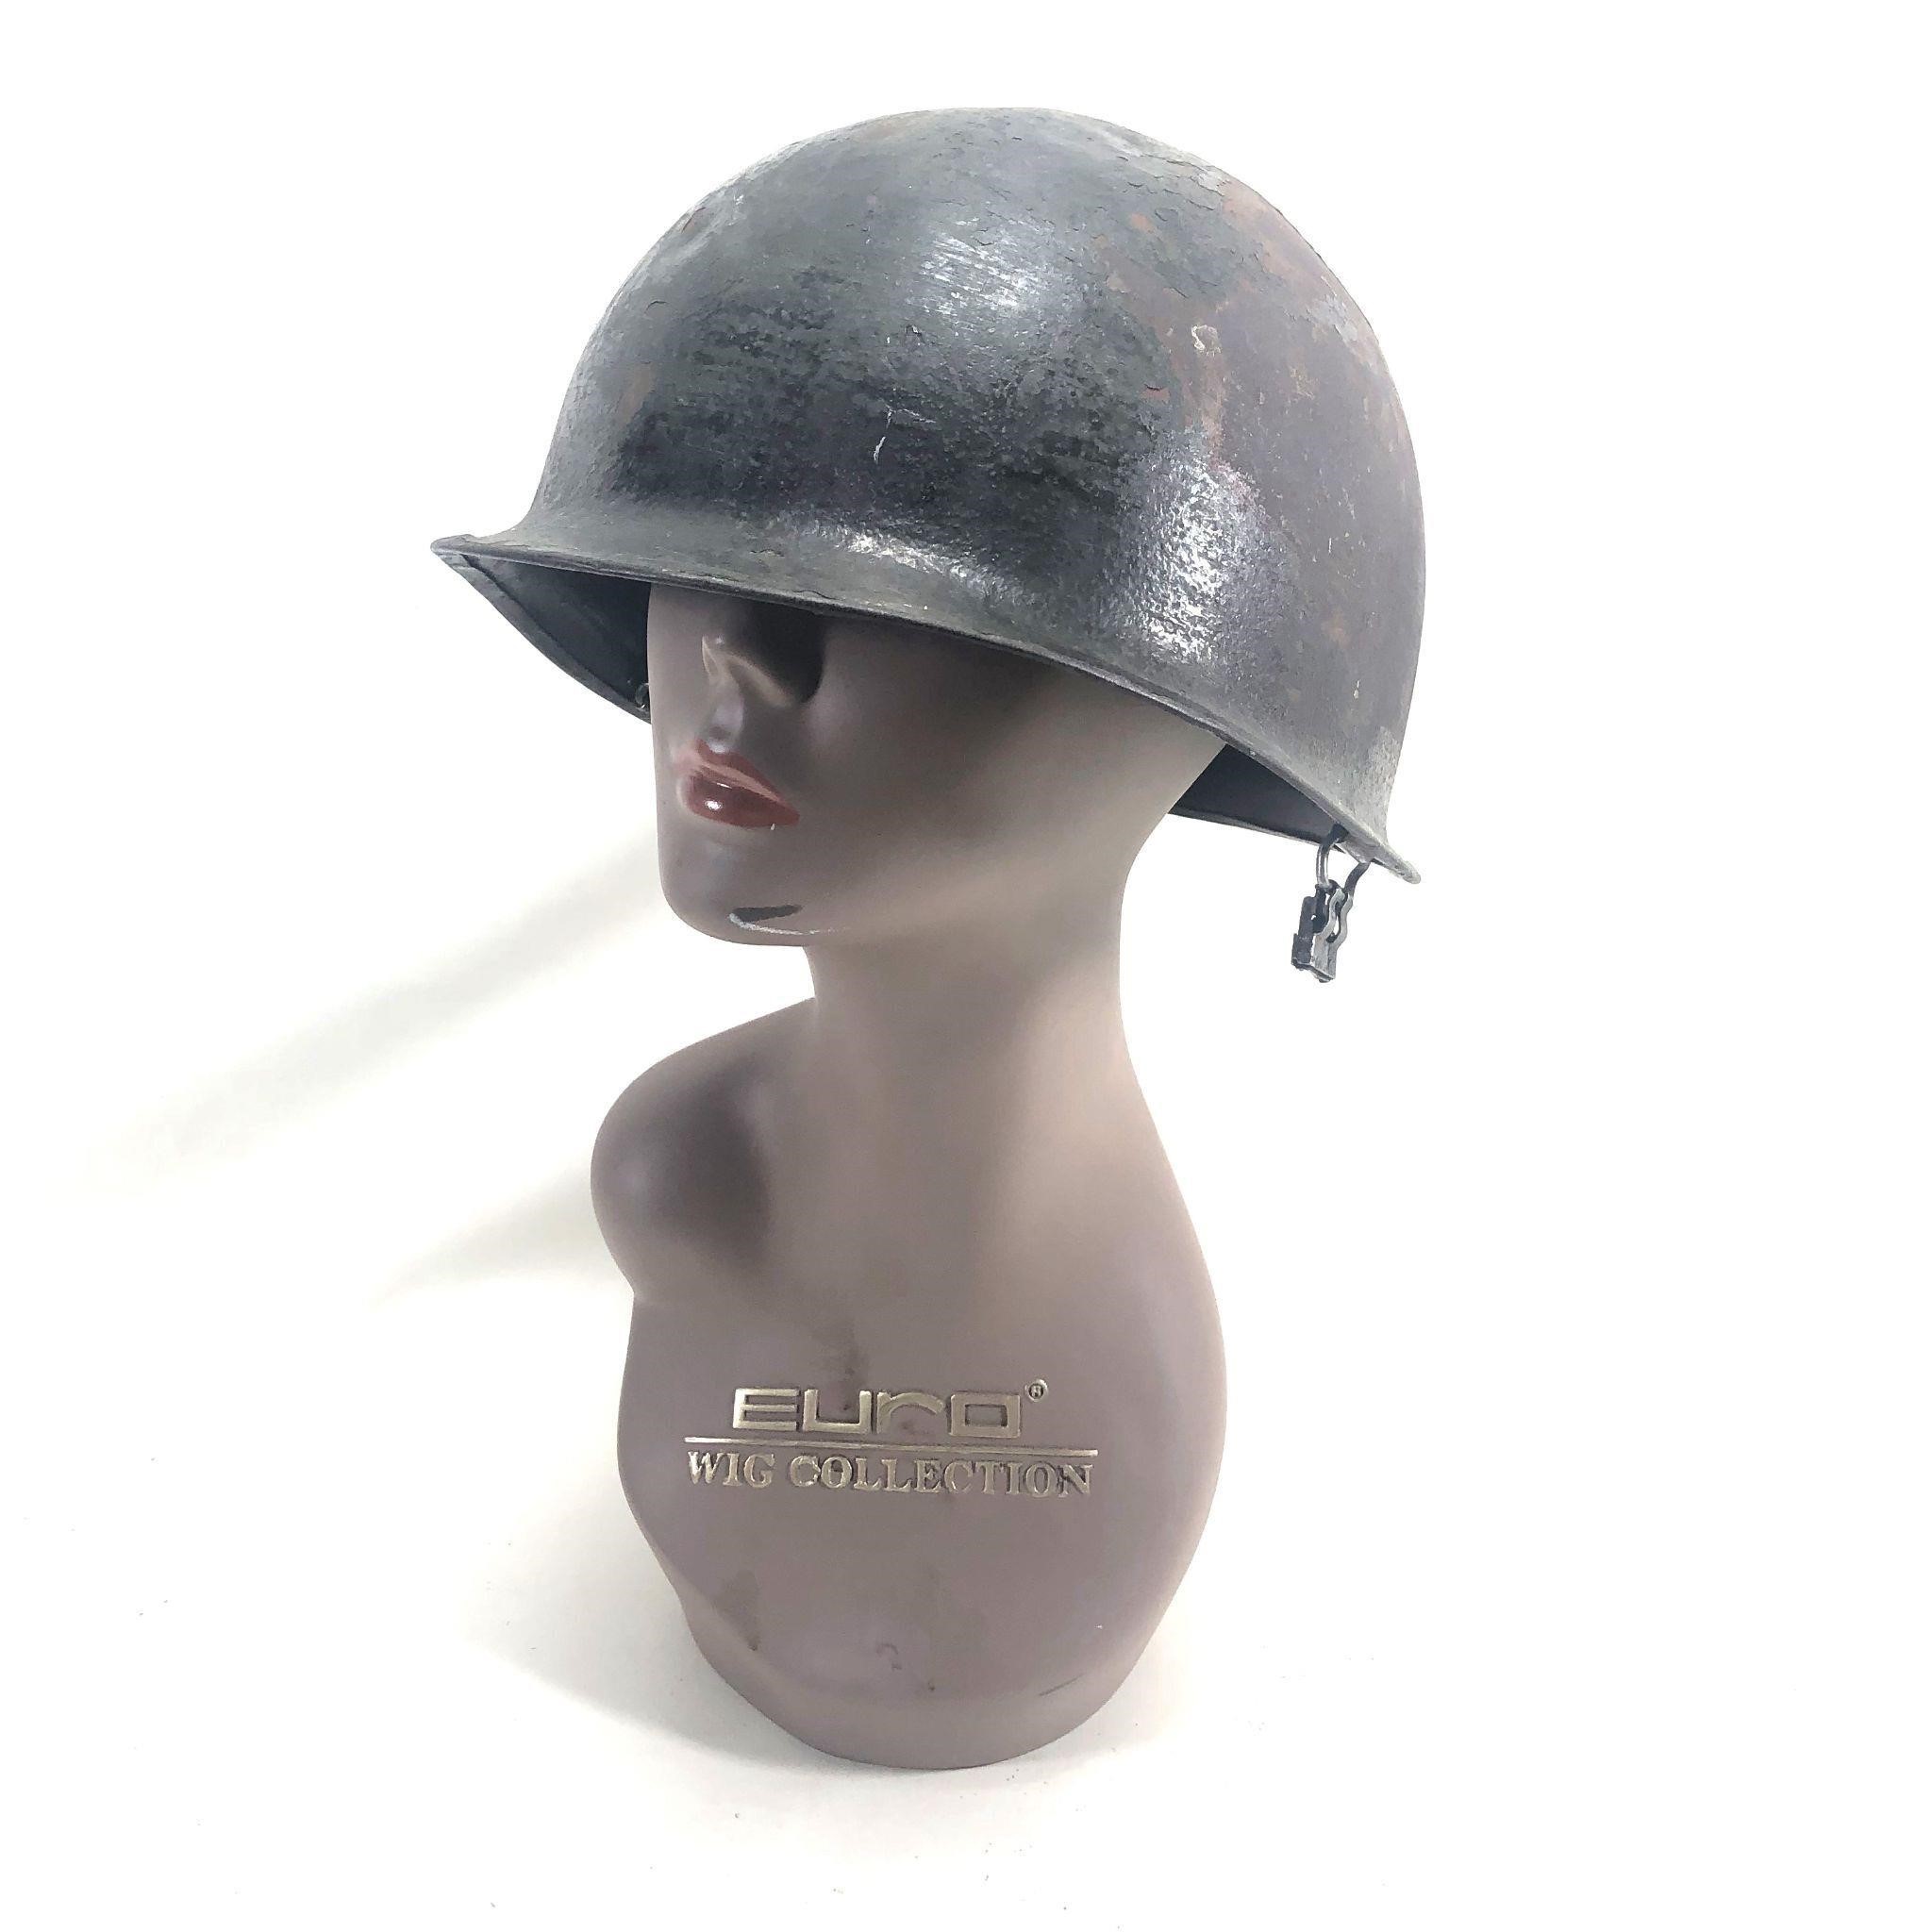 Vintage US Army Military Metal Soldier War Helmet